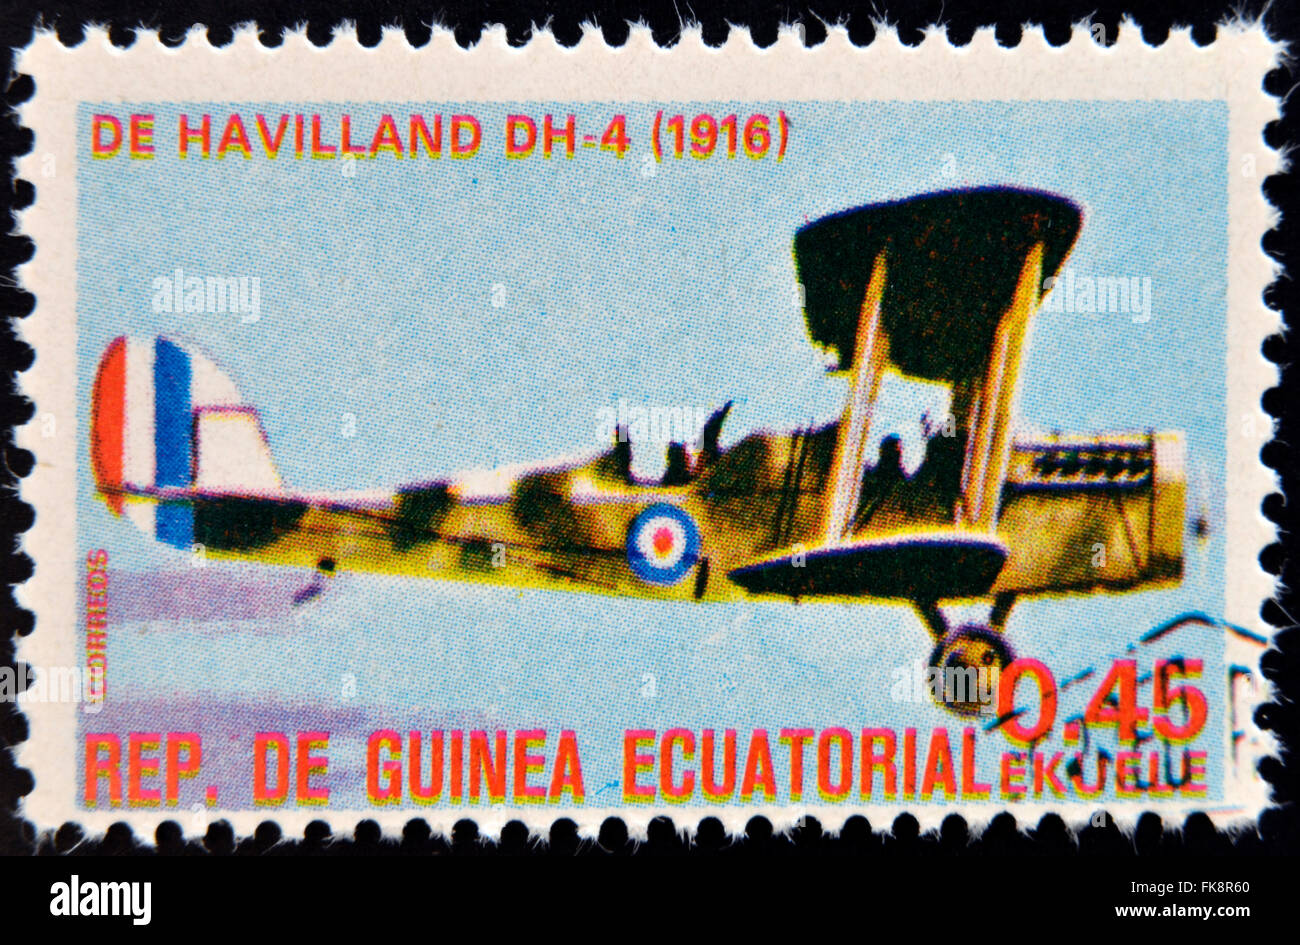 Guinée Équatoriale - circa 1974 : timbre imprimé en Guinée dédié à l'histoire de l'aviation présente Havilland DH-4, 1916 Banque D'Images